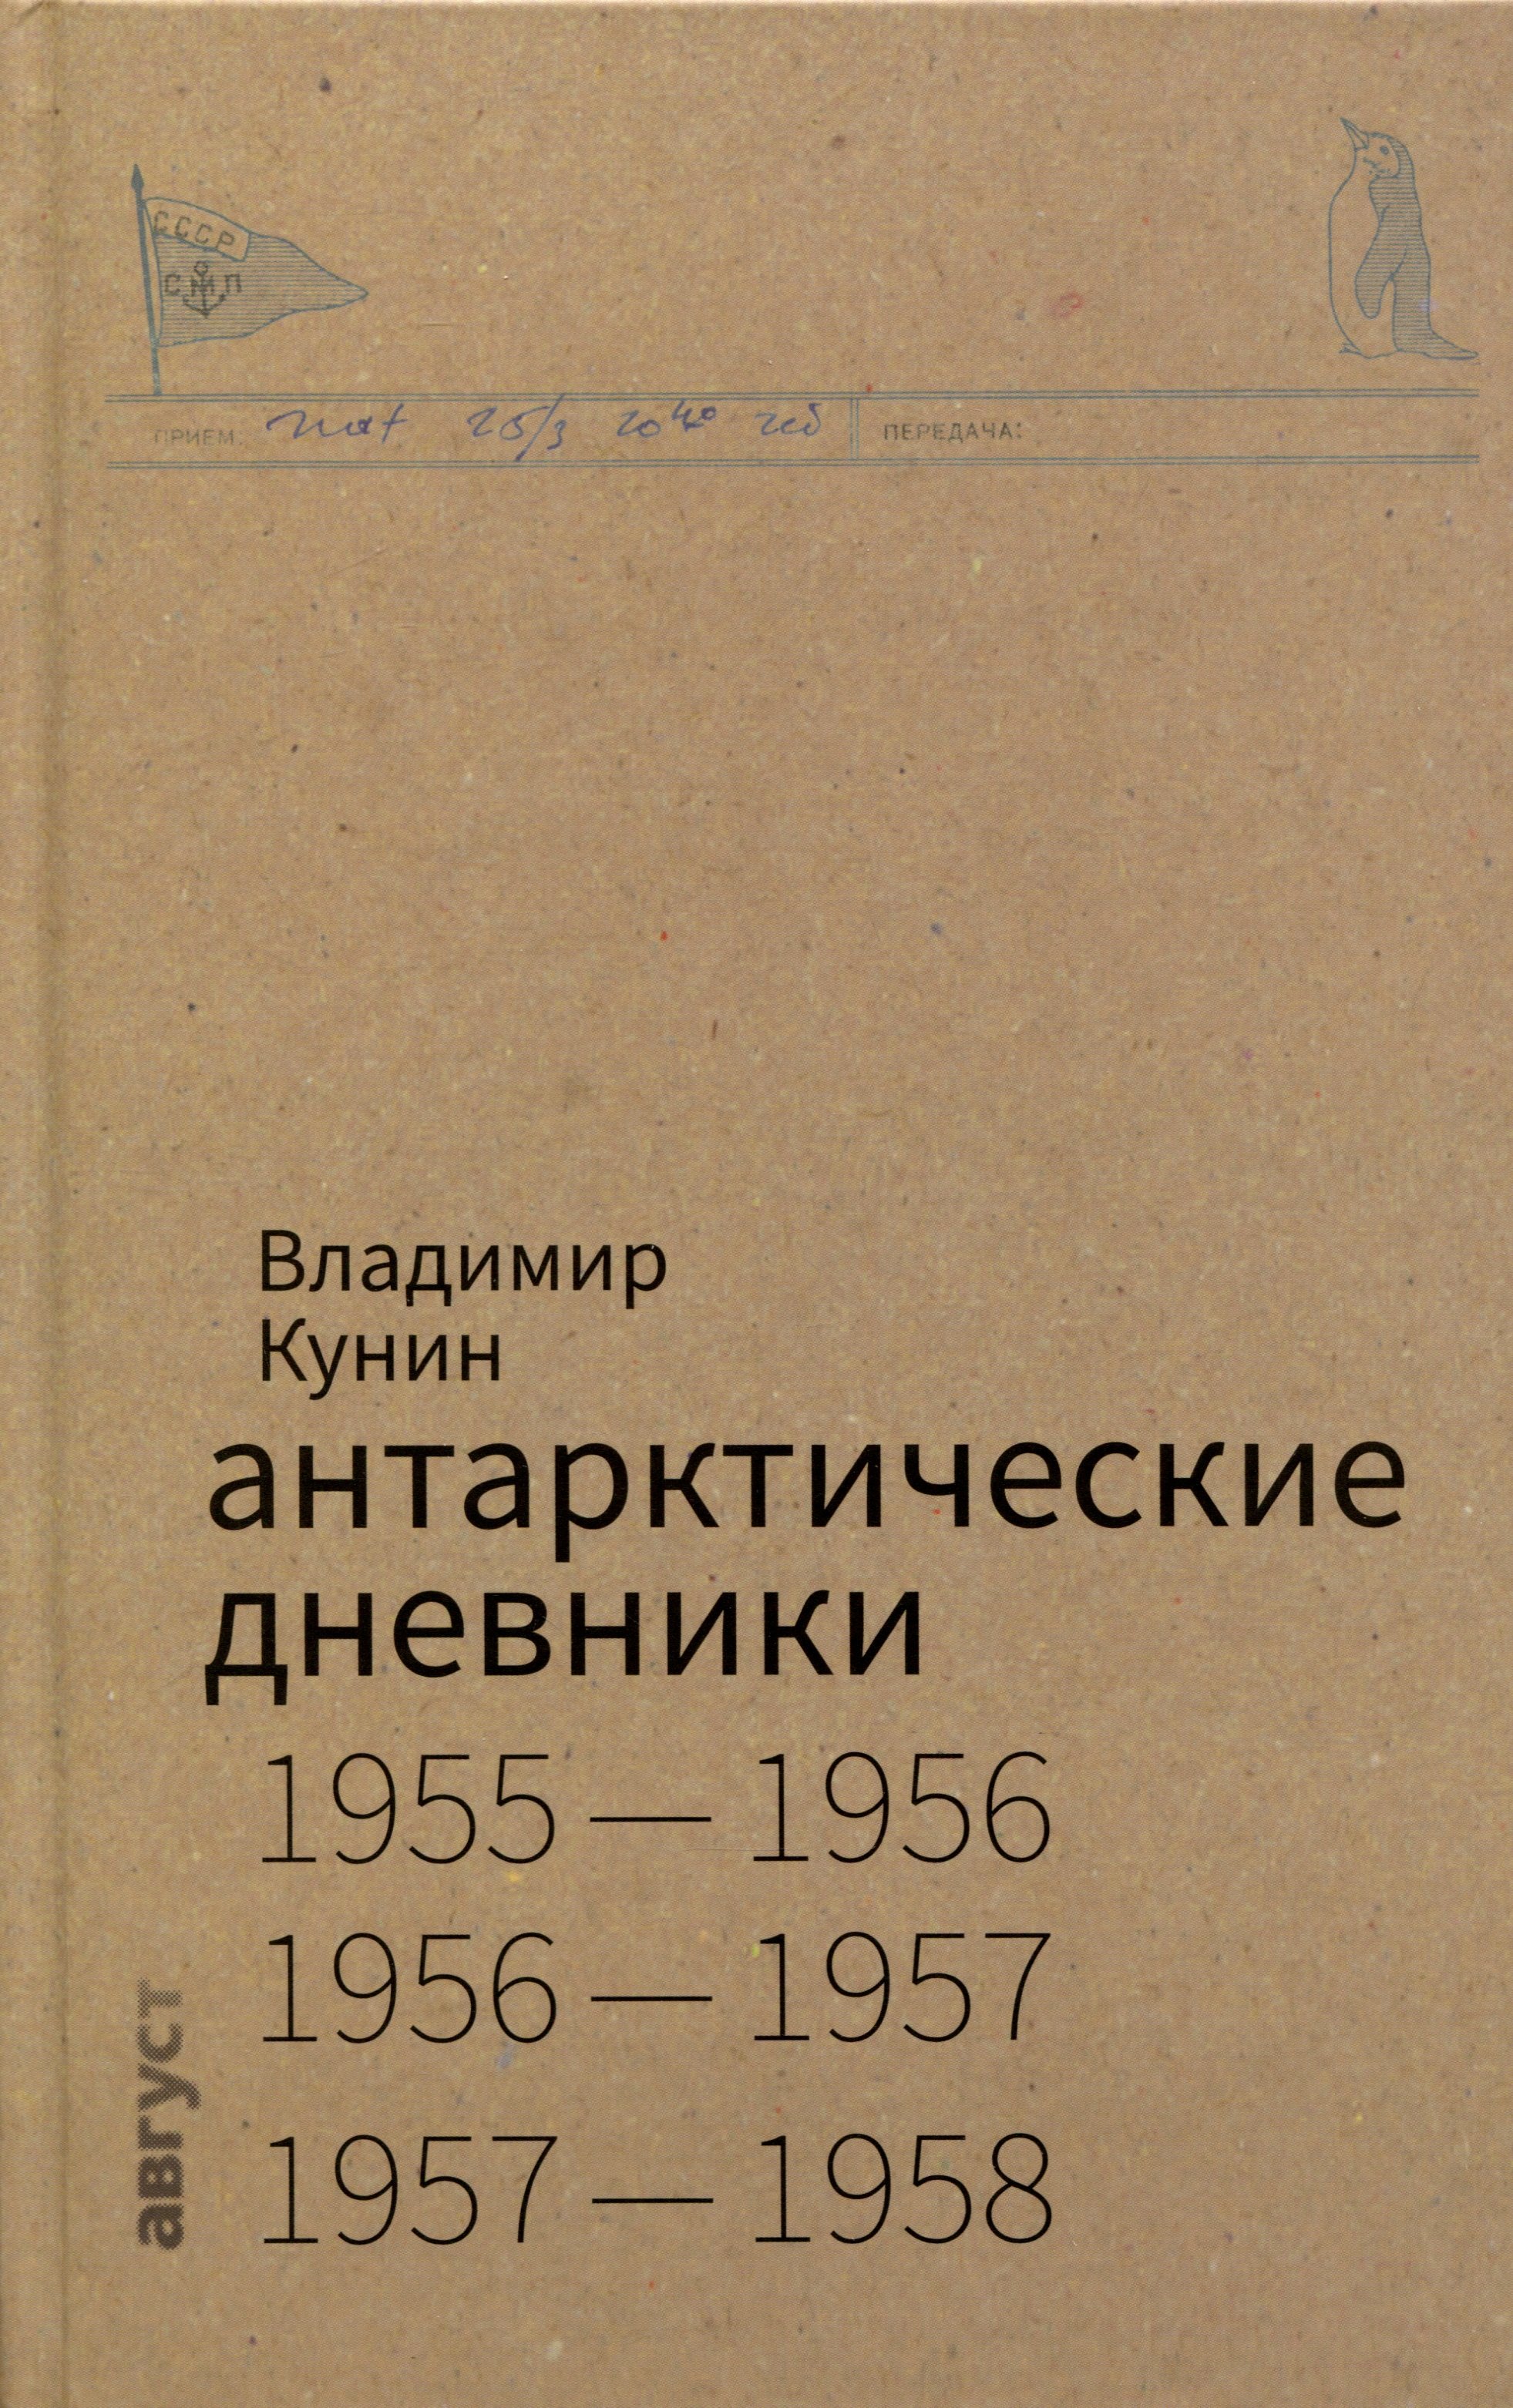   1955-1958